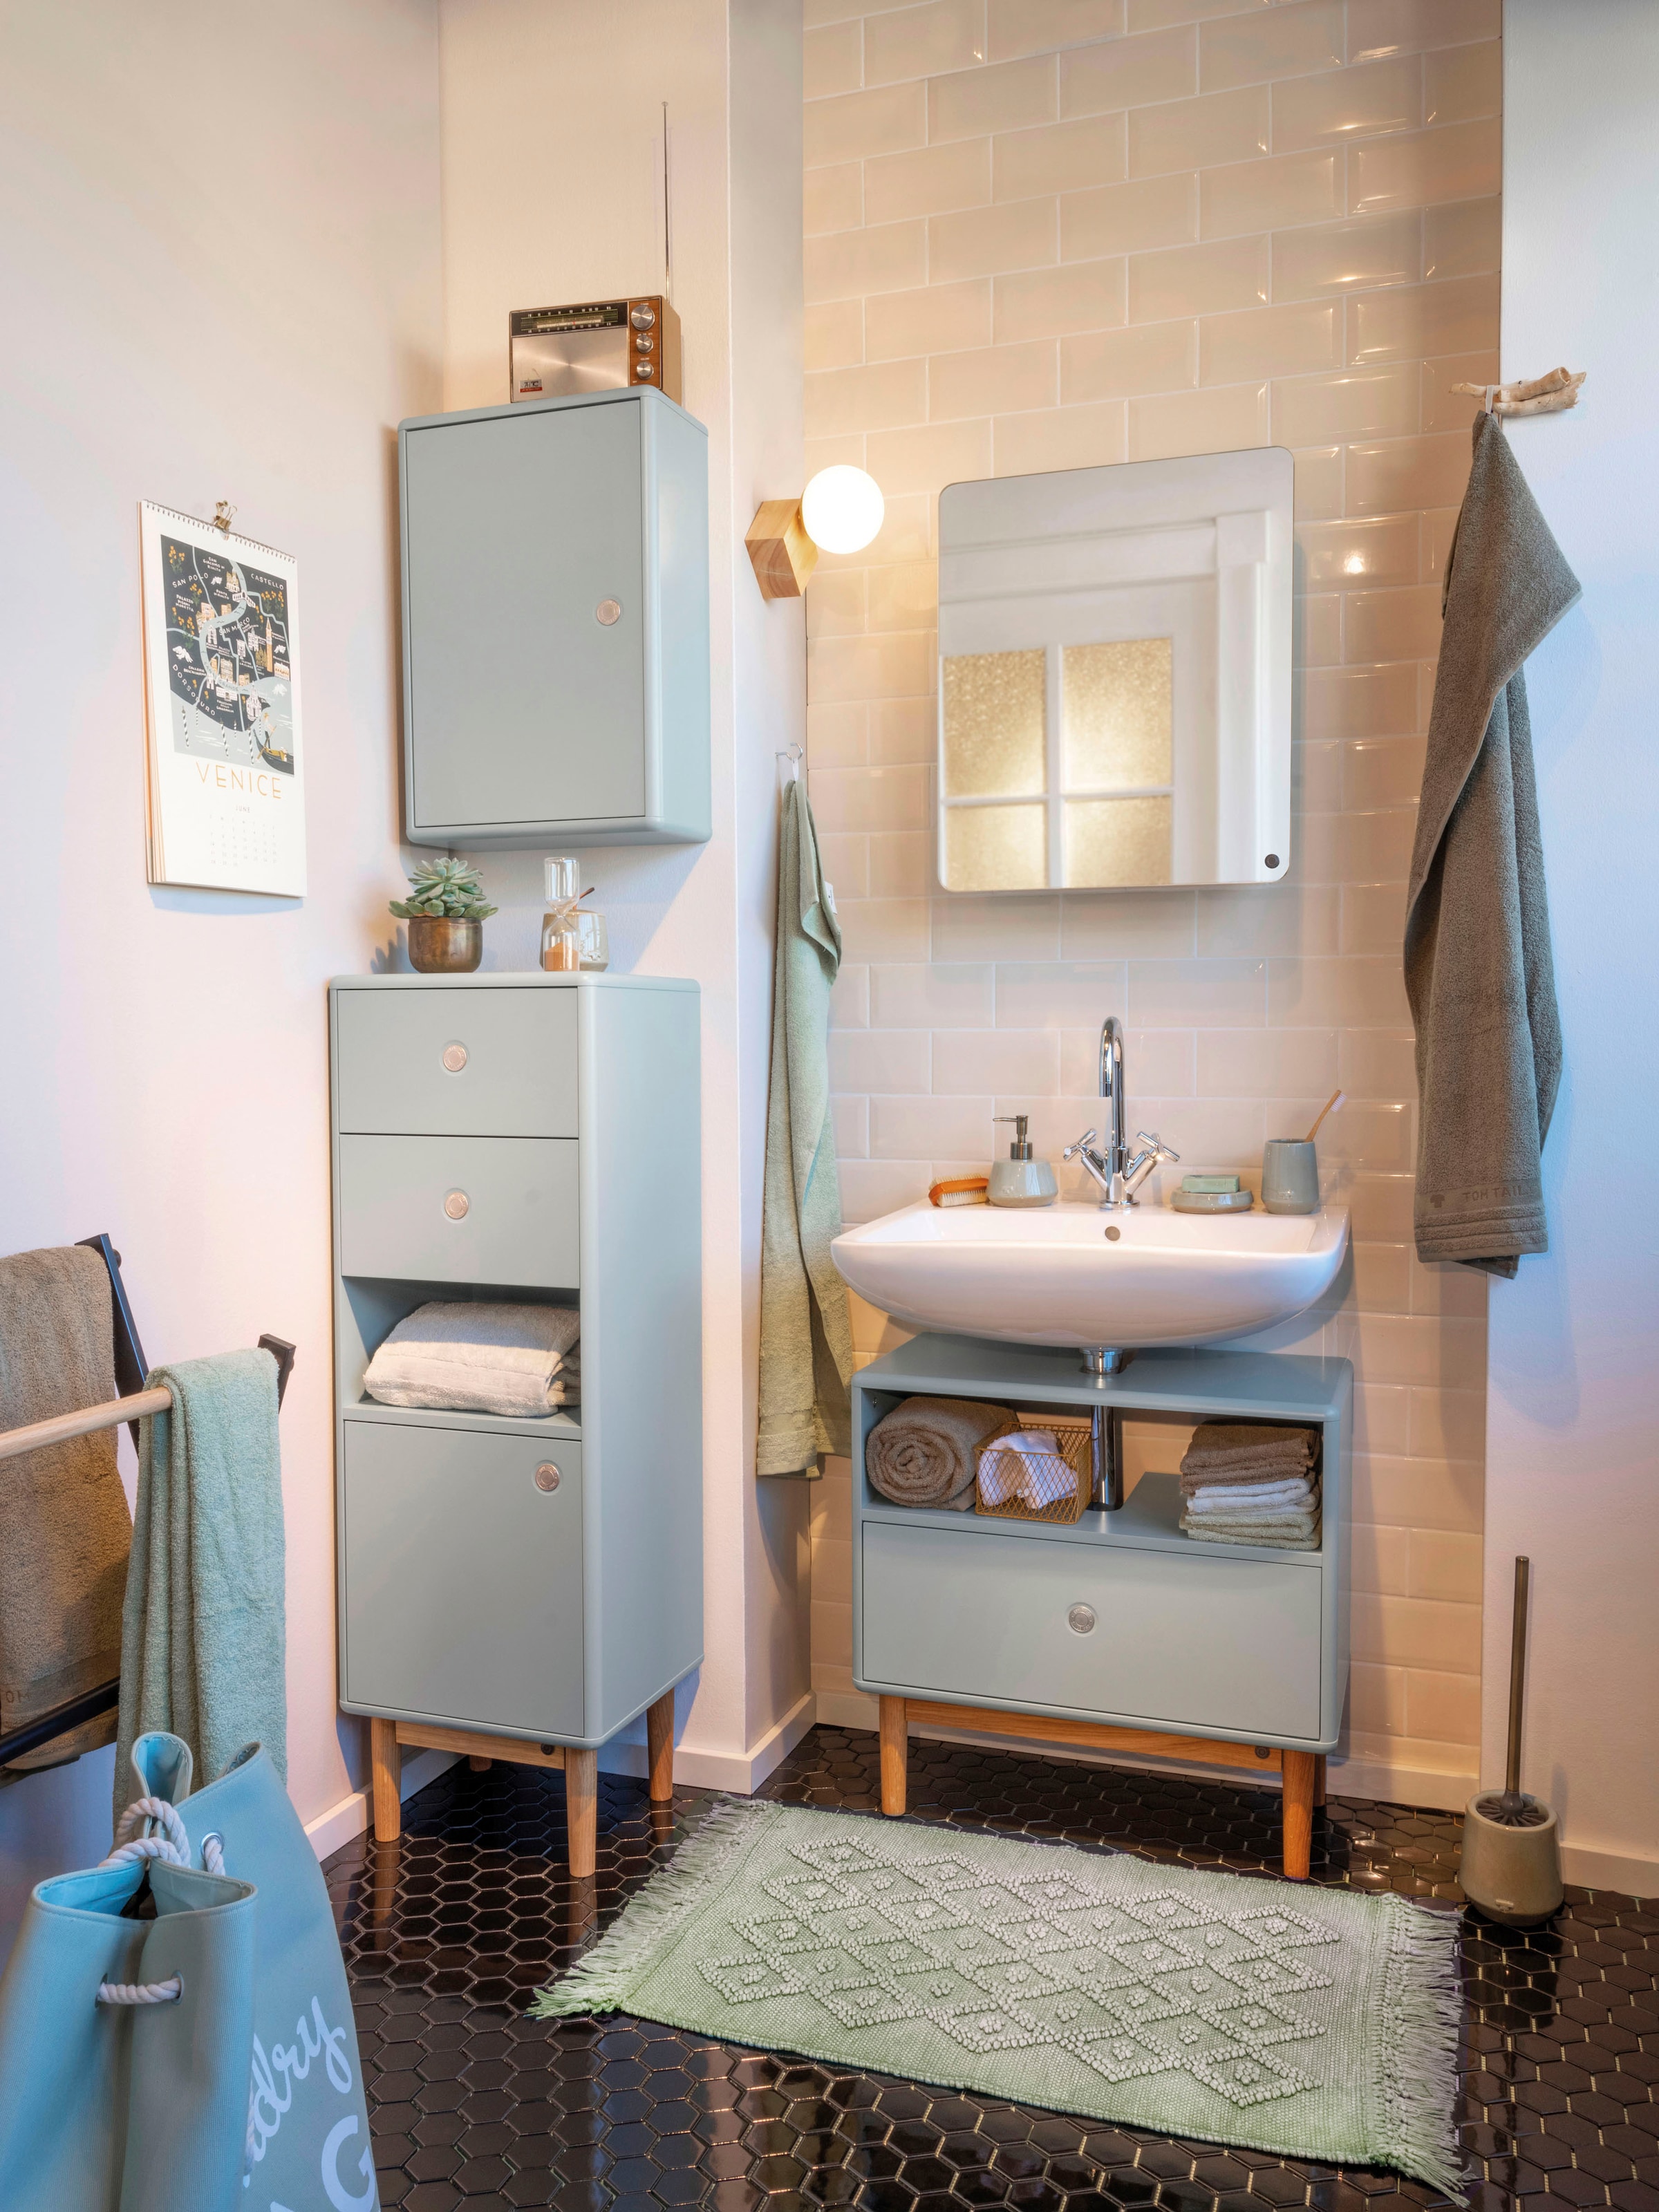 TOM TAILOR HOME Waschbeckenunterschrank »COLOR BATH«, mit Schublade, mit  Push-to-Open, mit Füßen in Eiche, Breite 65 cm online kaufen | mit 3 Jahren  XXL Garantie